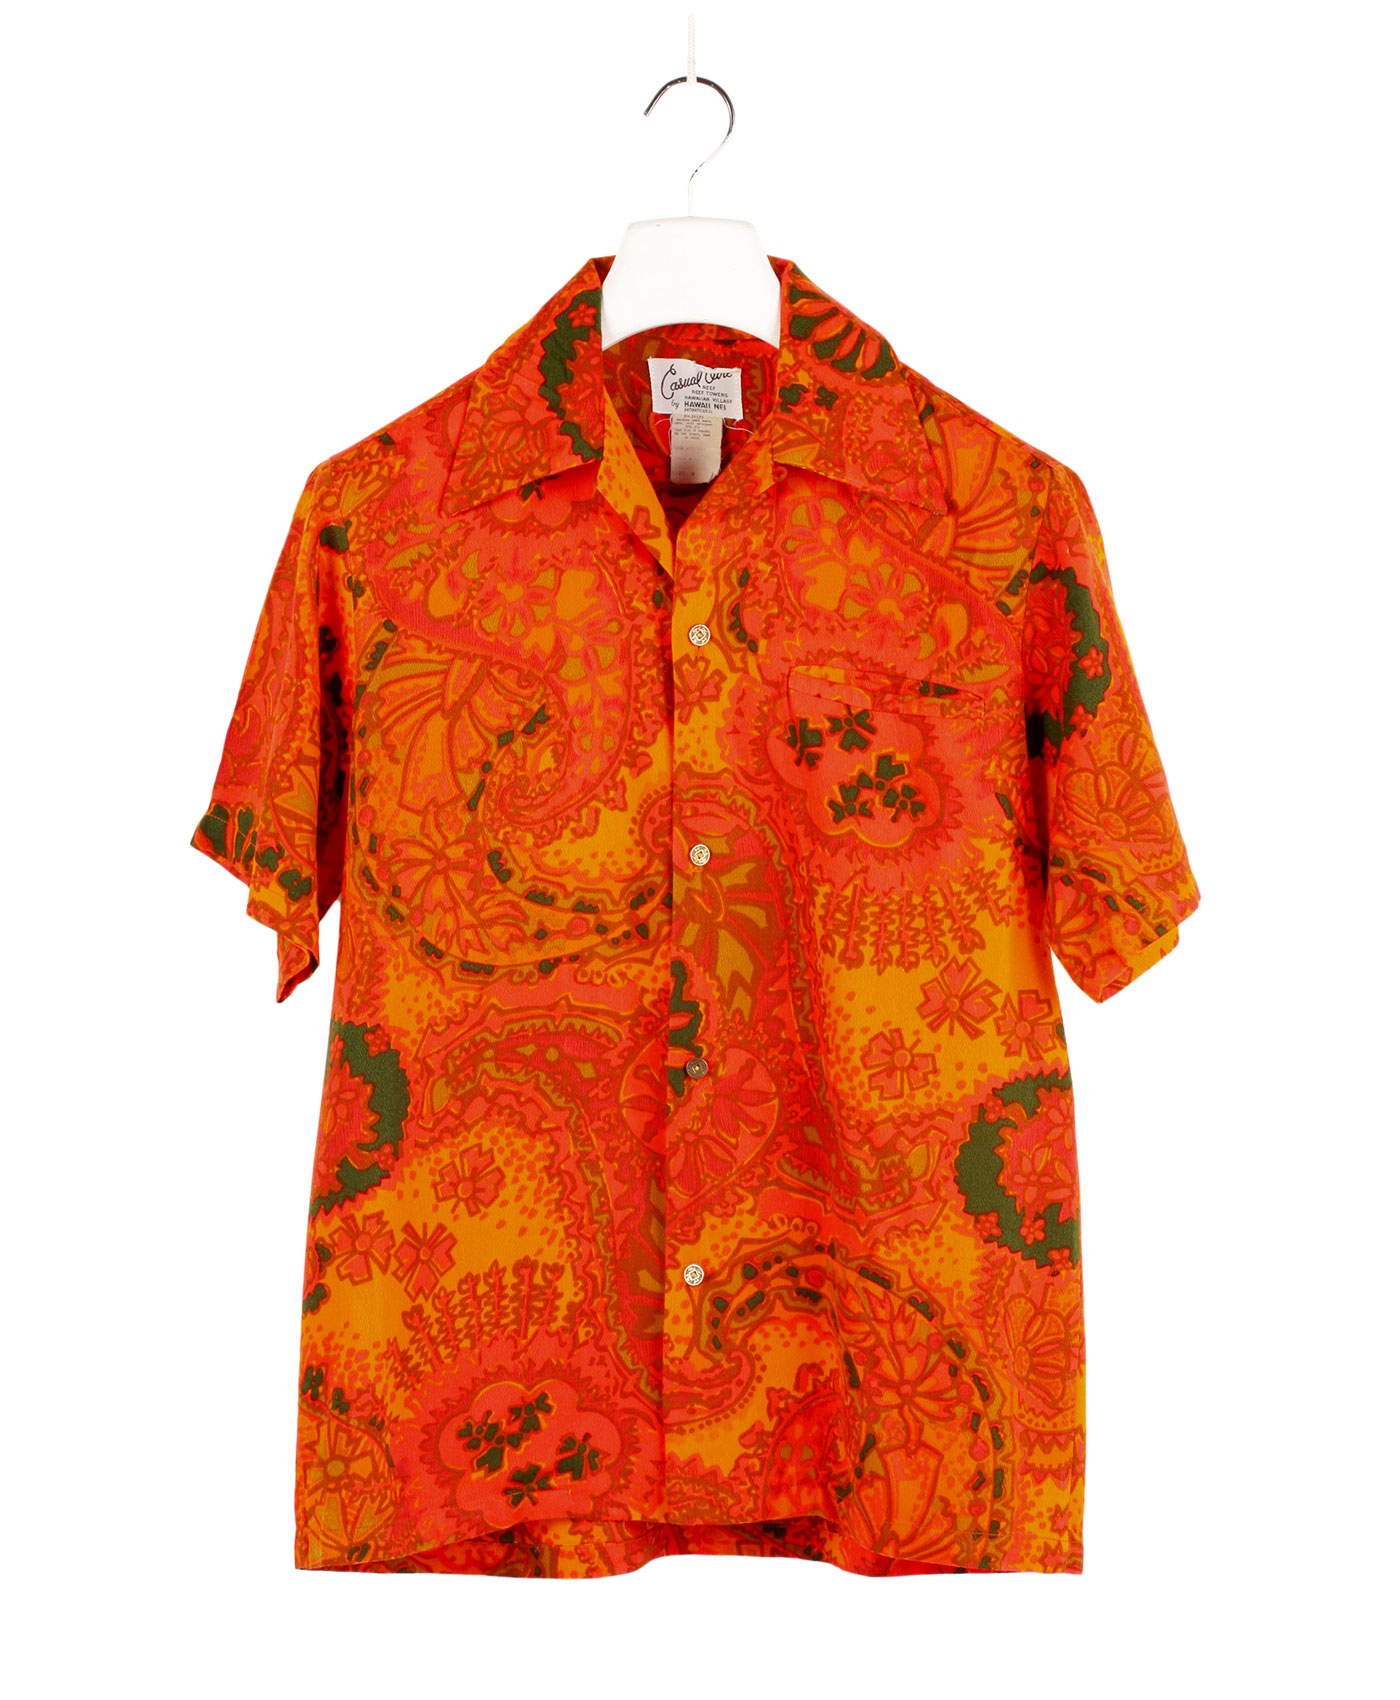 CASUAL AIRE Hawaiian shirt 60s ca.